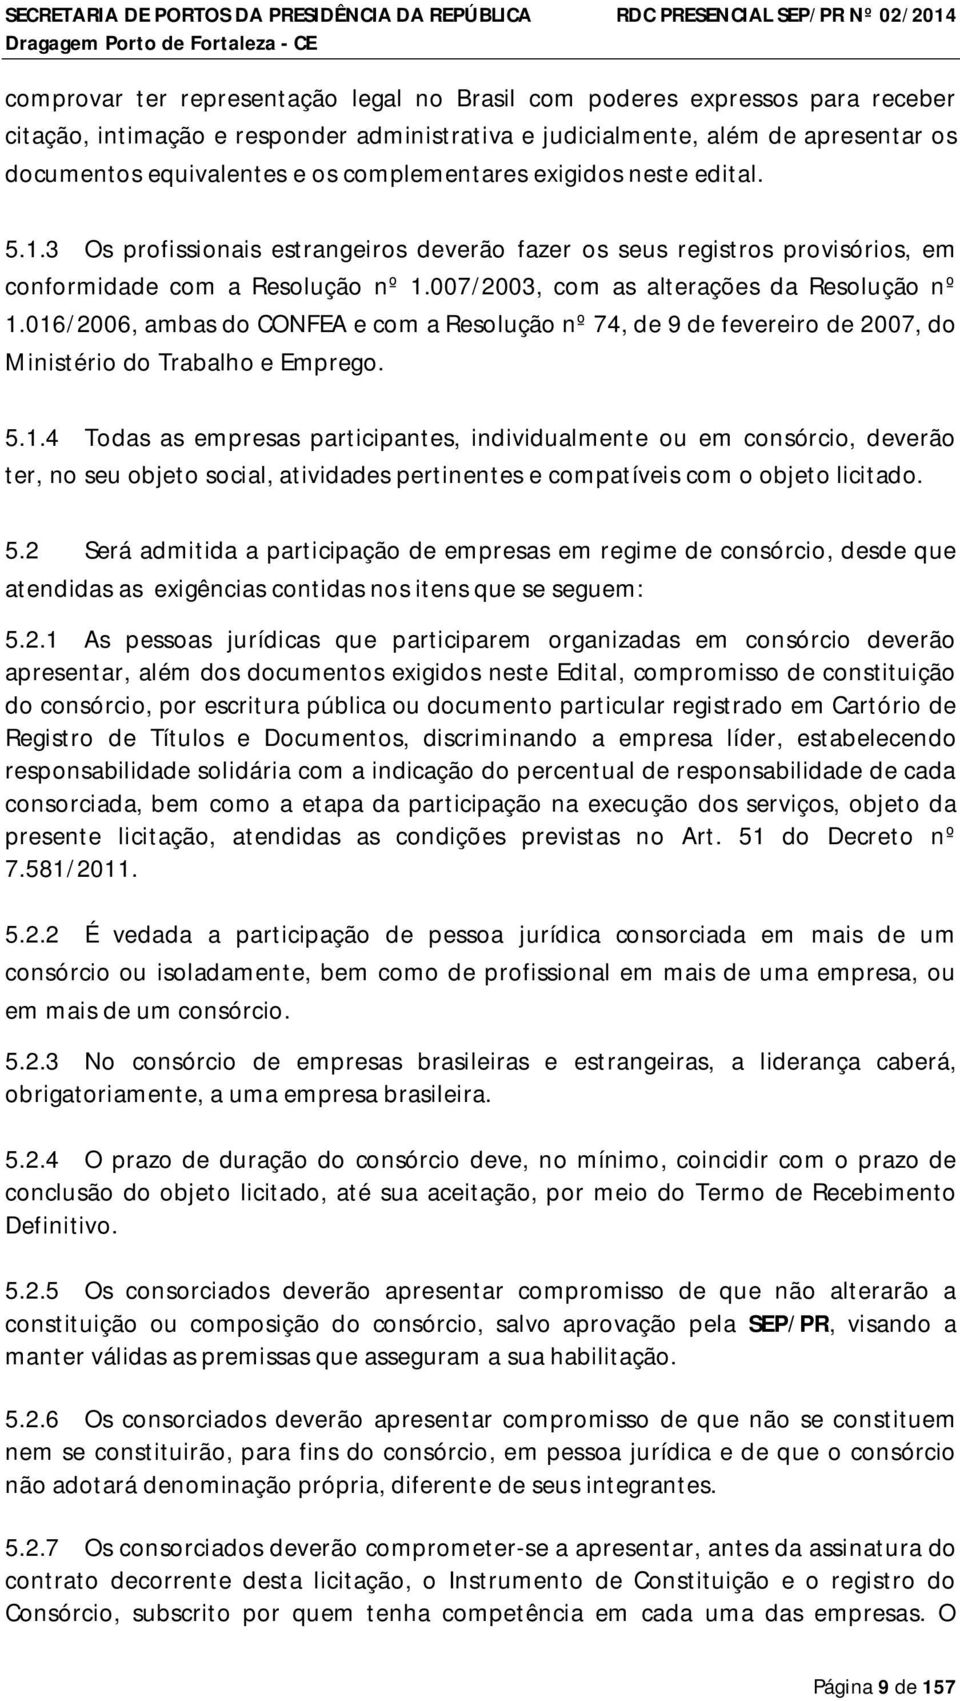 007/2003, com as alterações da Resolução nº 1.